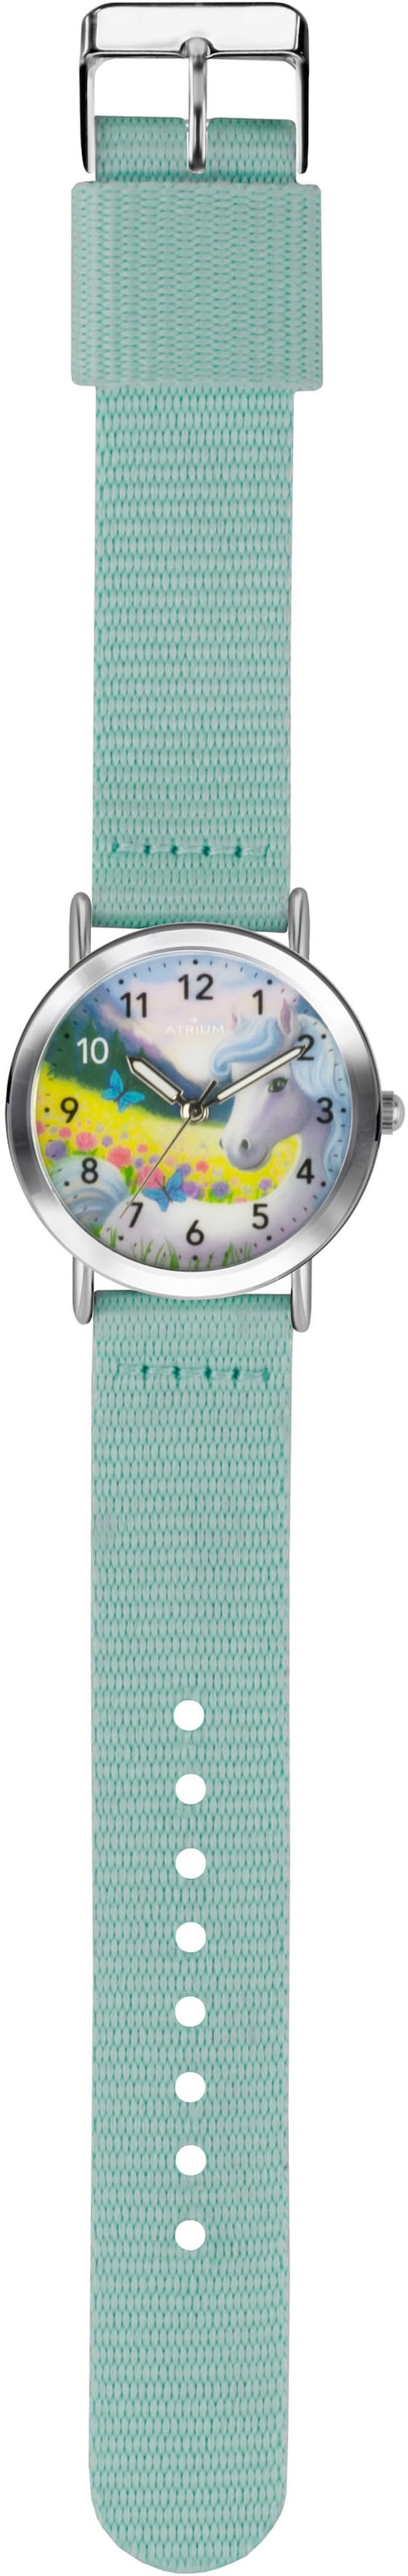 Atrium Quarzuhr »A44-13«, Armbanduhr, Kinderuhr, Mädchenenuhr, ideal auch als Geschenk